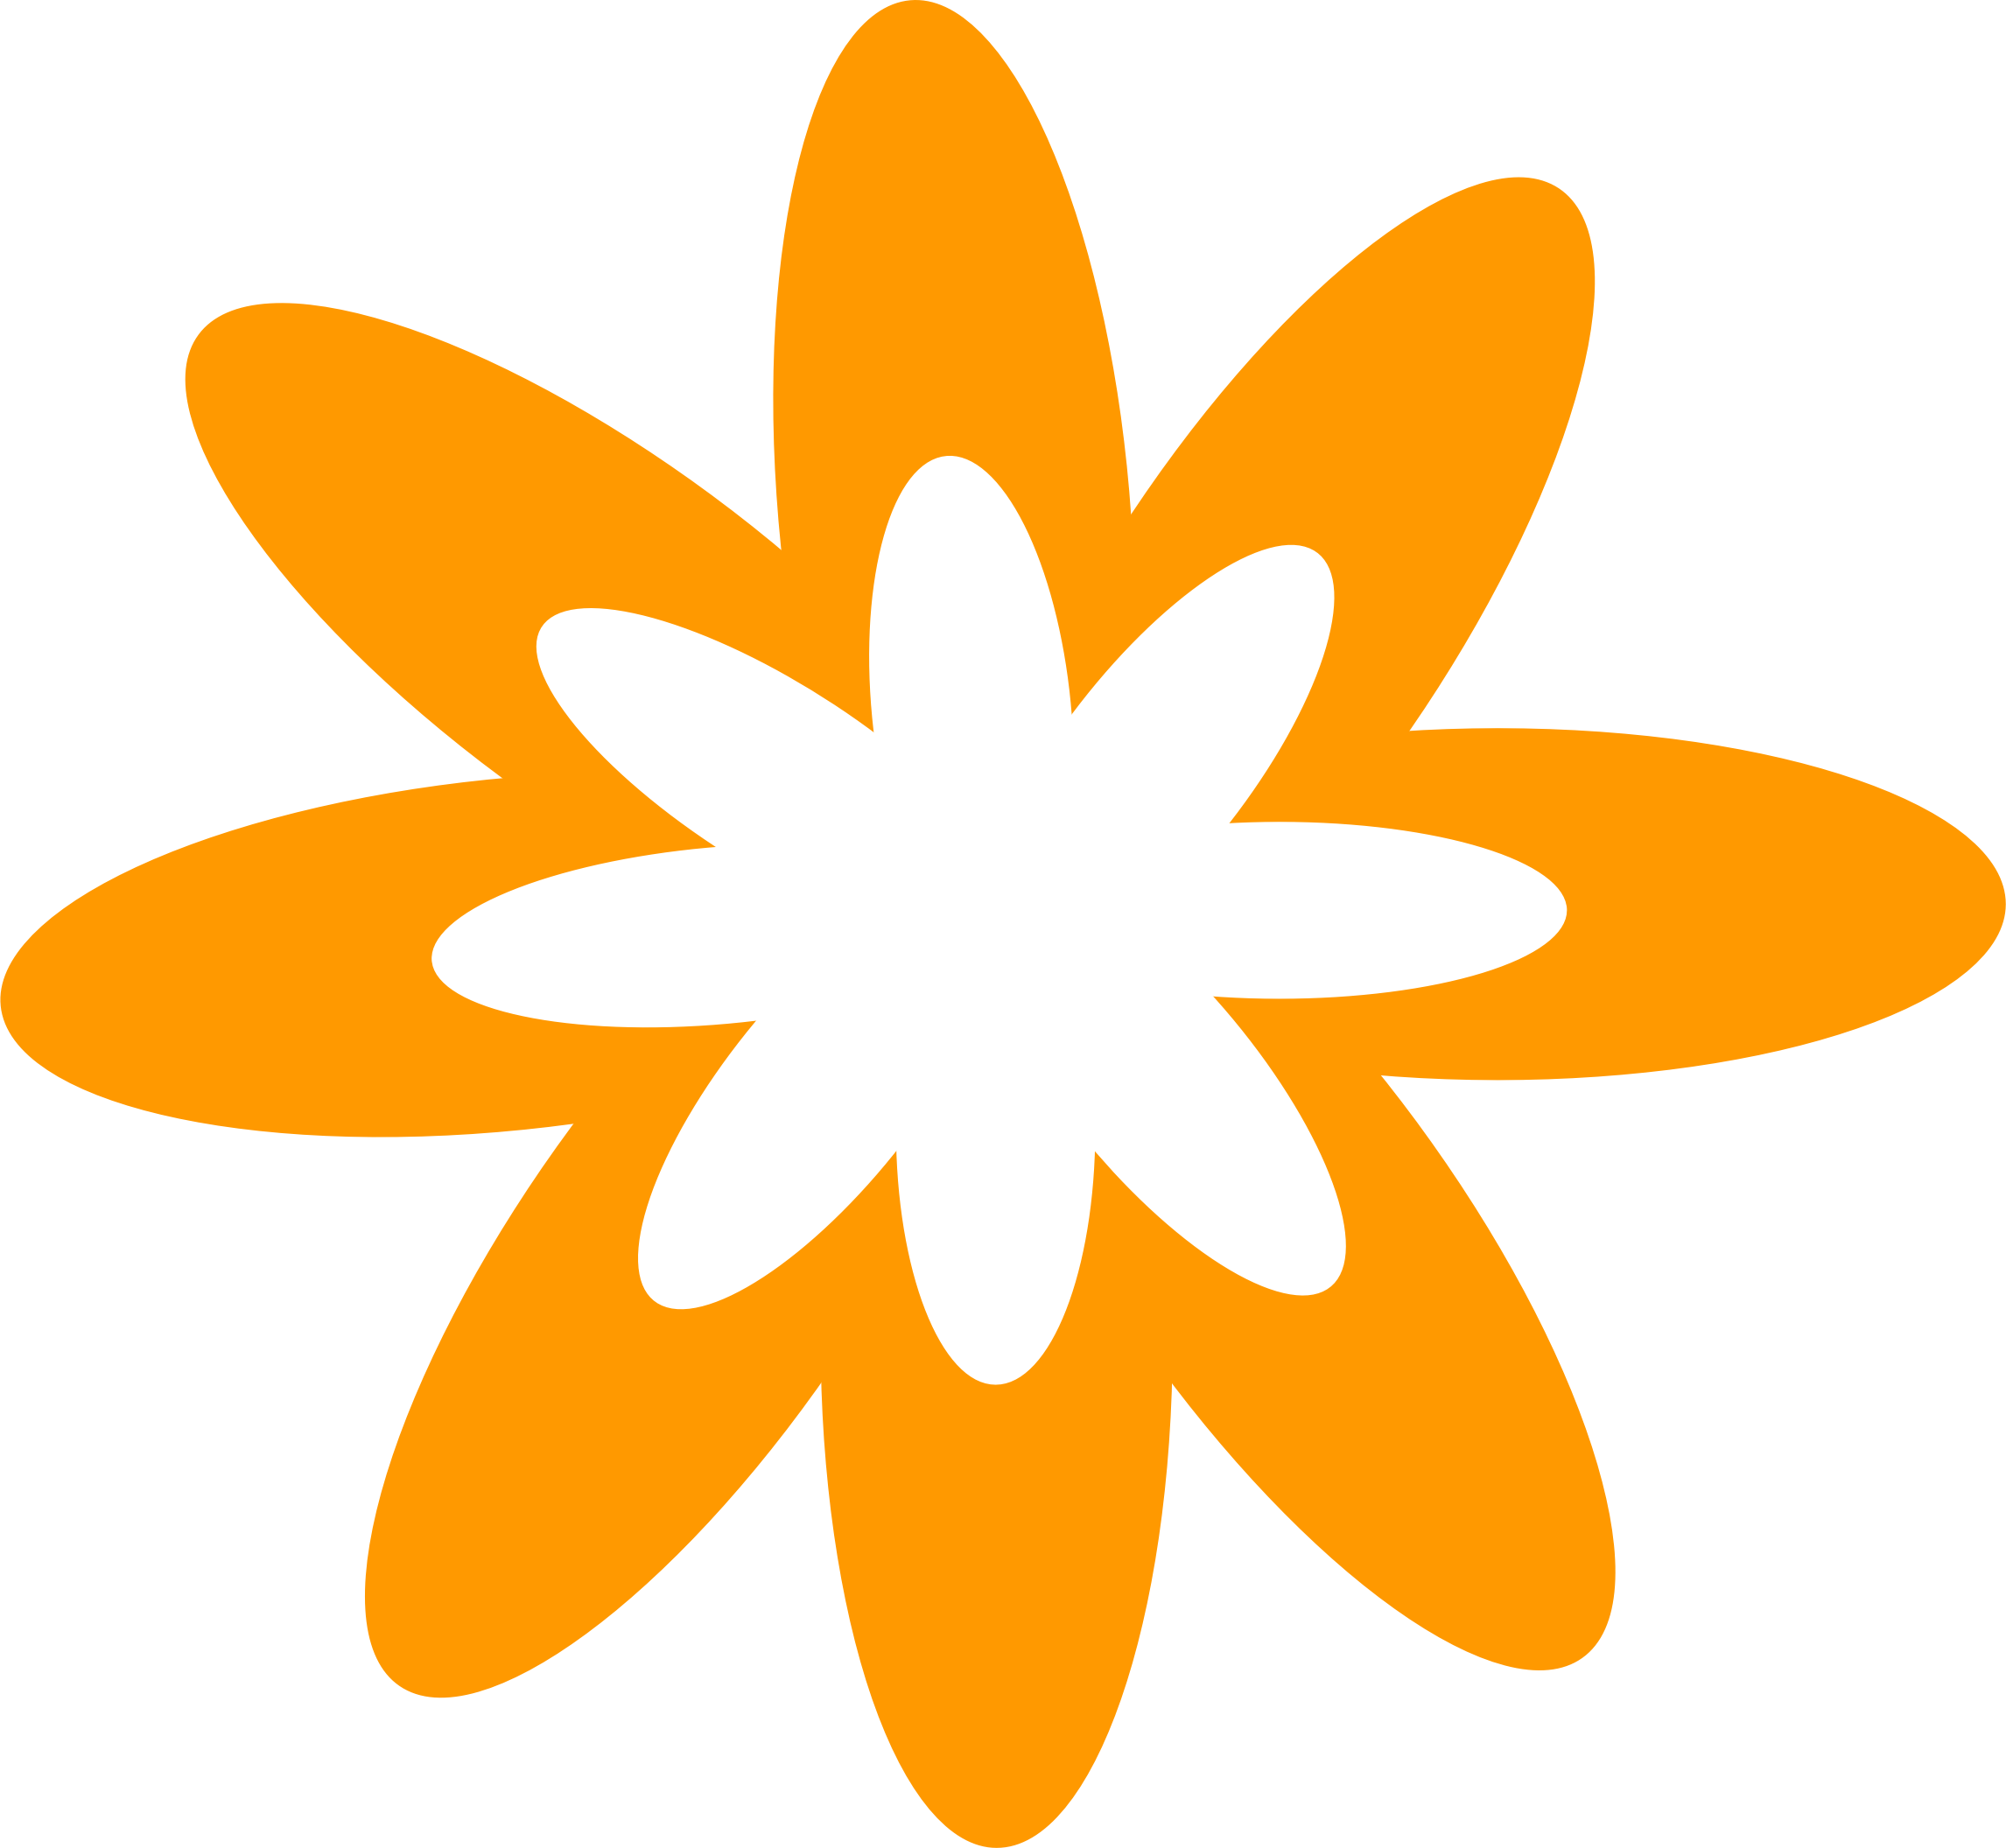 Burst flower icons png. Clipart pencil orange